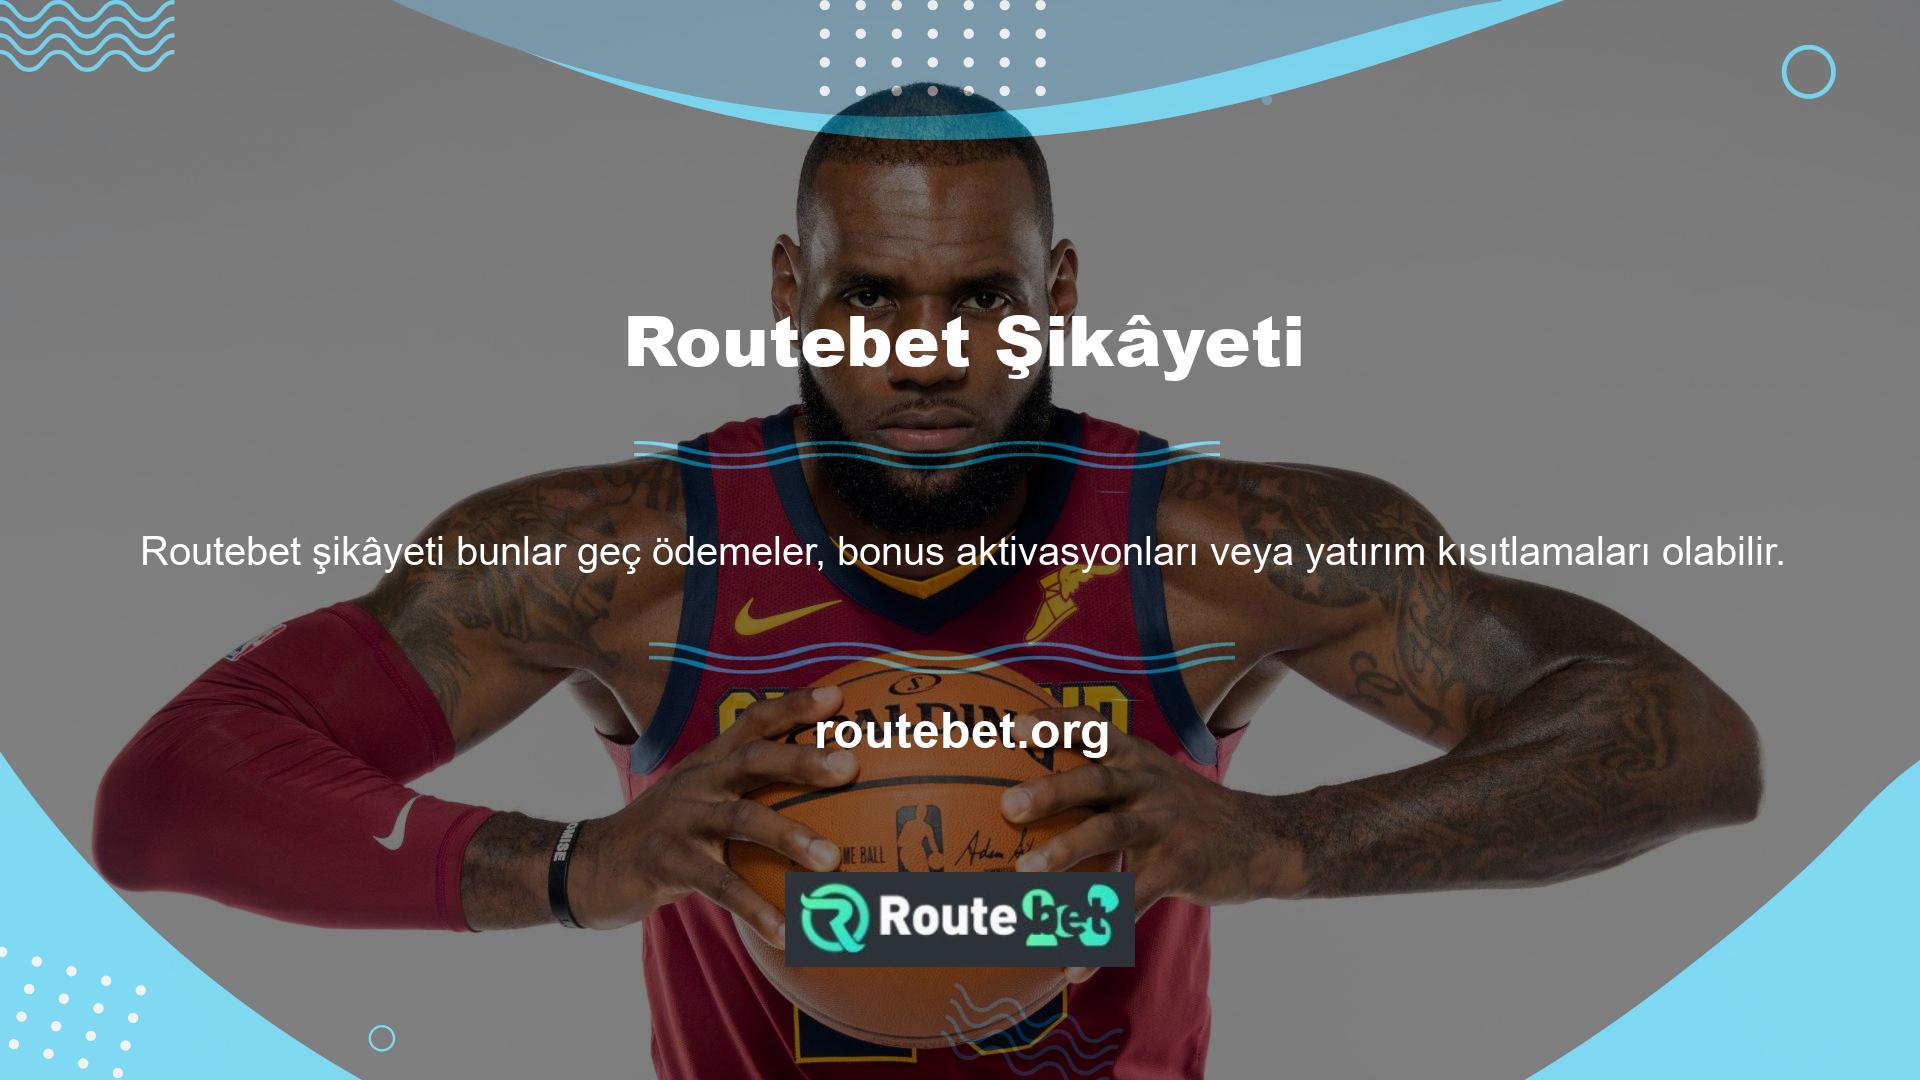 Tipik olarak Routebet Giriş sitesi, tüm alanlardaki basit hizmet yönergeleriyle tanınır